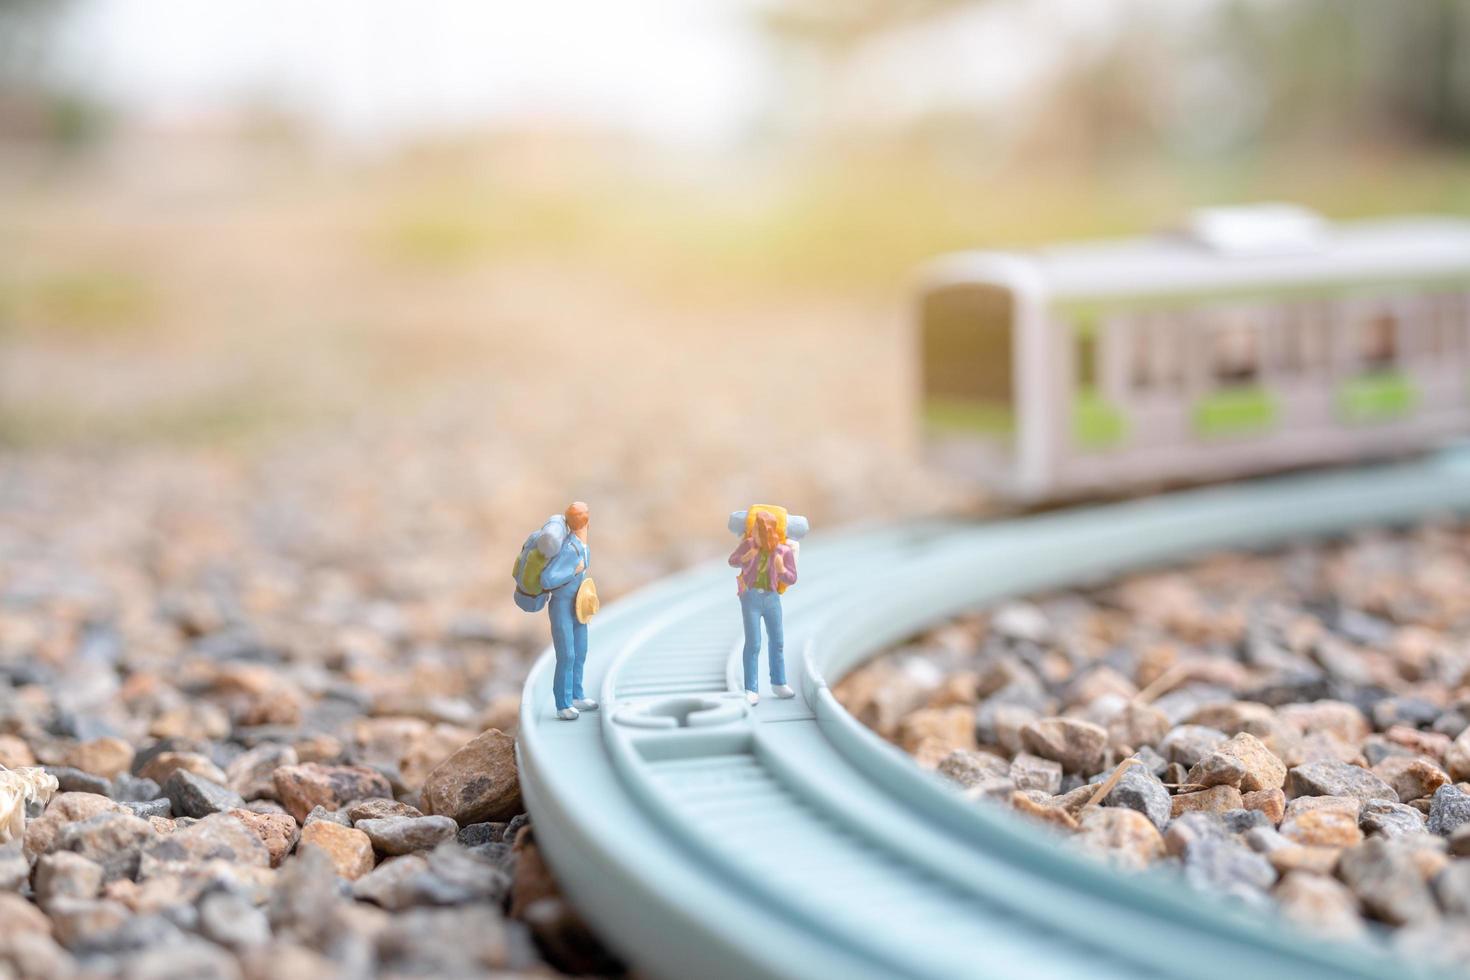 miniatyrpar backpackers som går på en järnväg, resekoncept foto